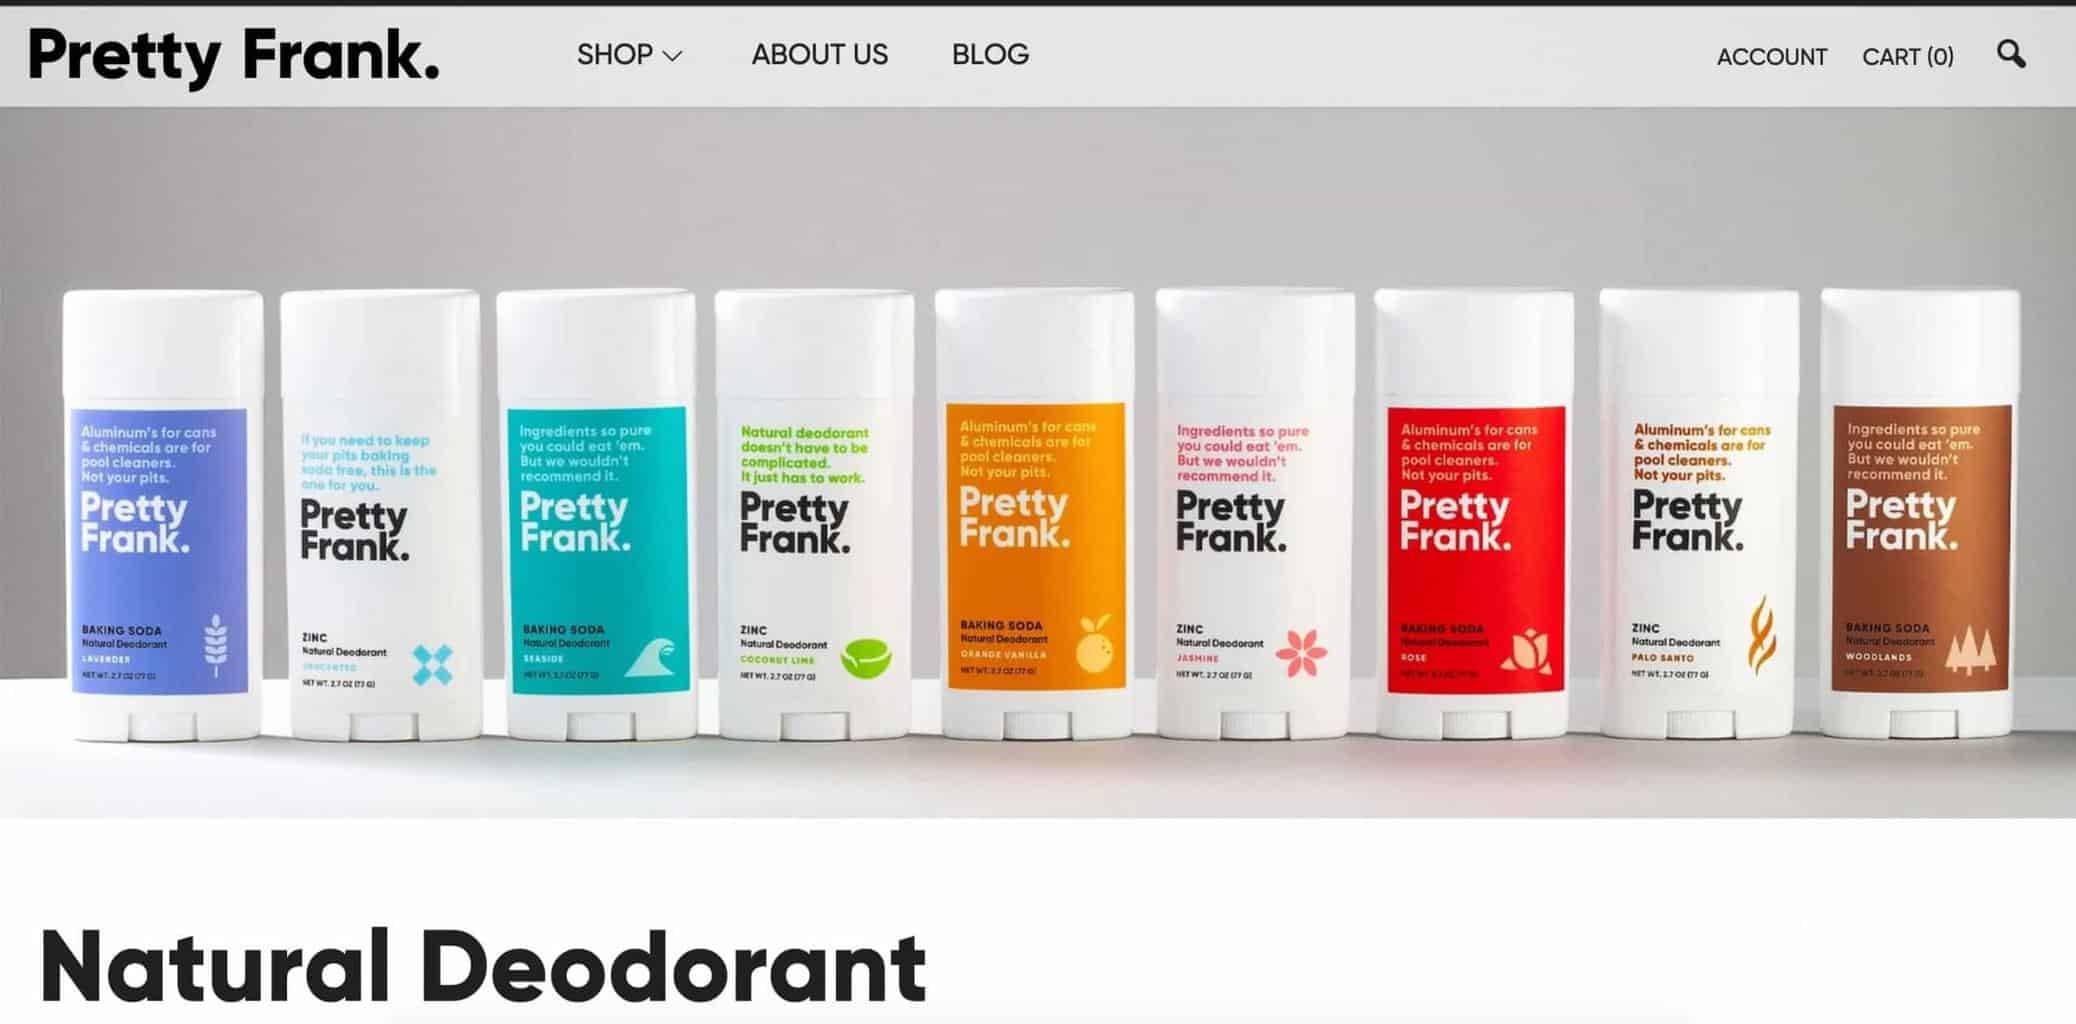 Row of deodorants